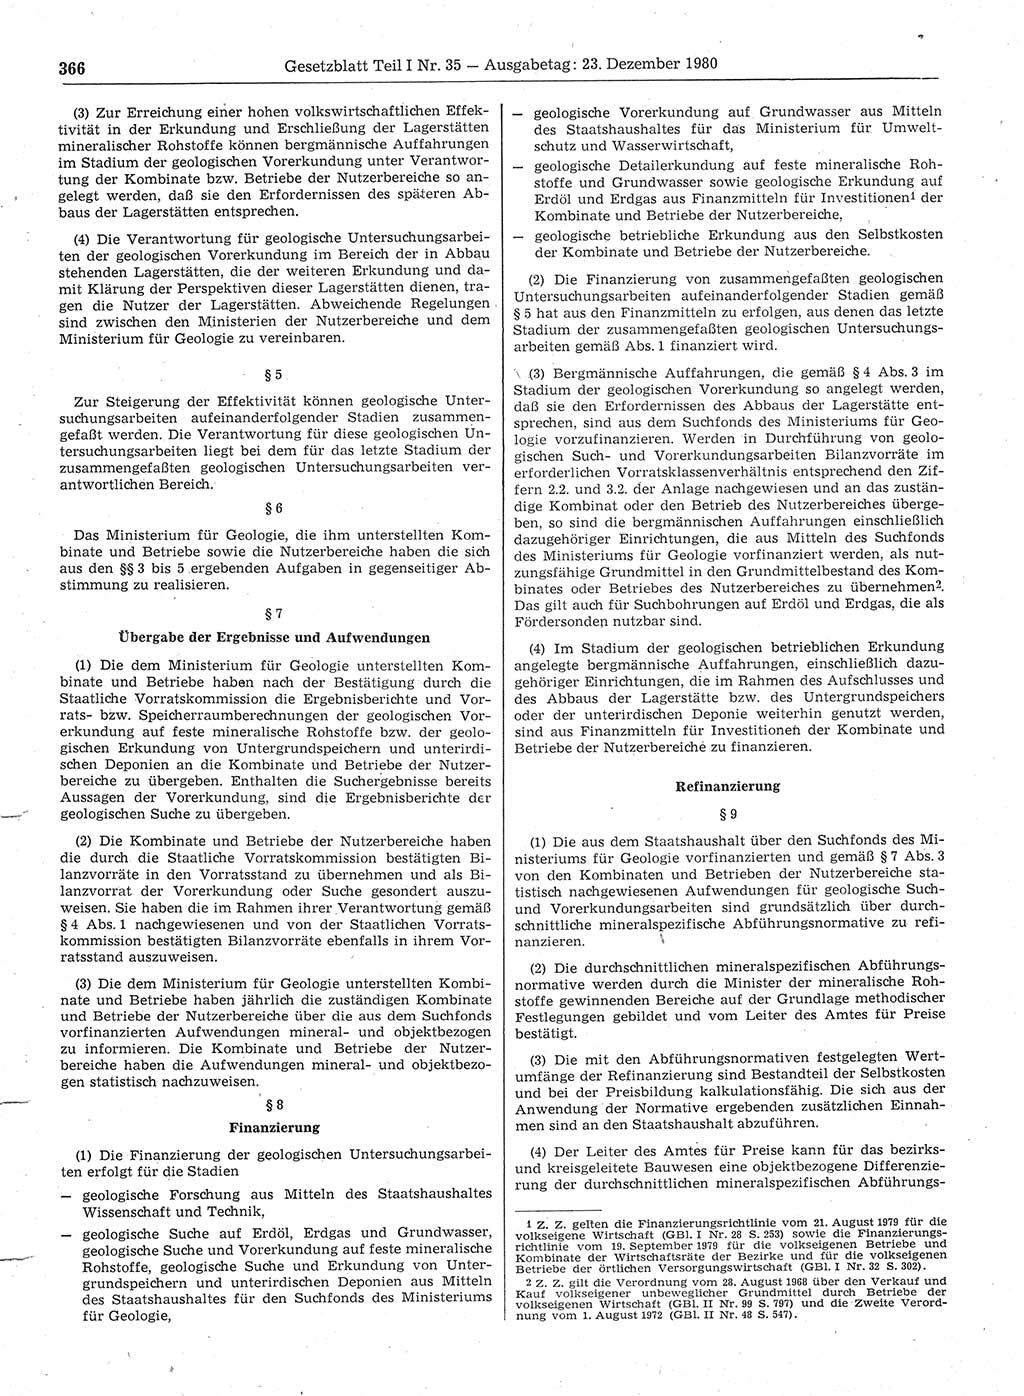 Gesetzblatt (GBl.) der Deutschen Demokratischen Republik (DDR) Teil Ⅰ 1980, Seite 366 (GBl. DDR Ⅰ 1980, S. 366)